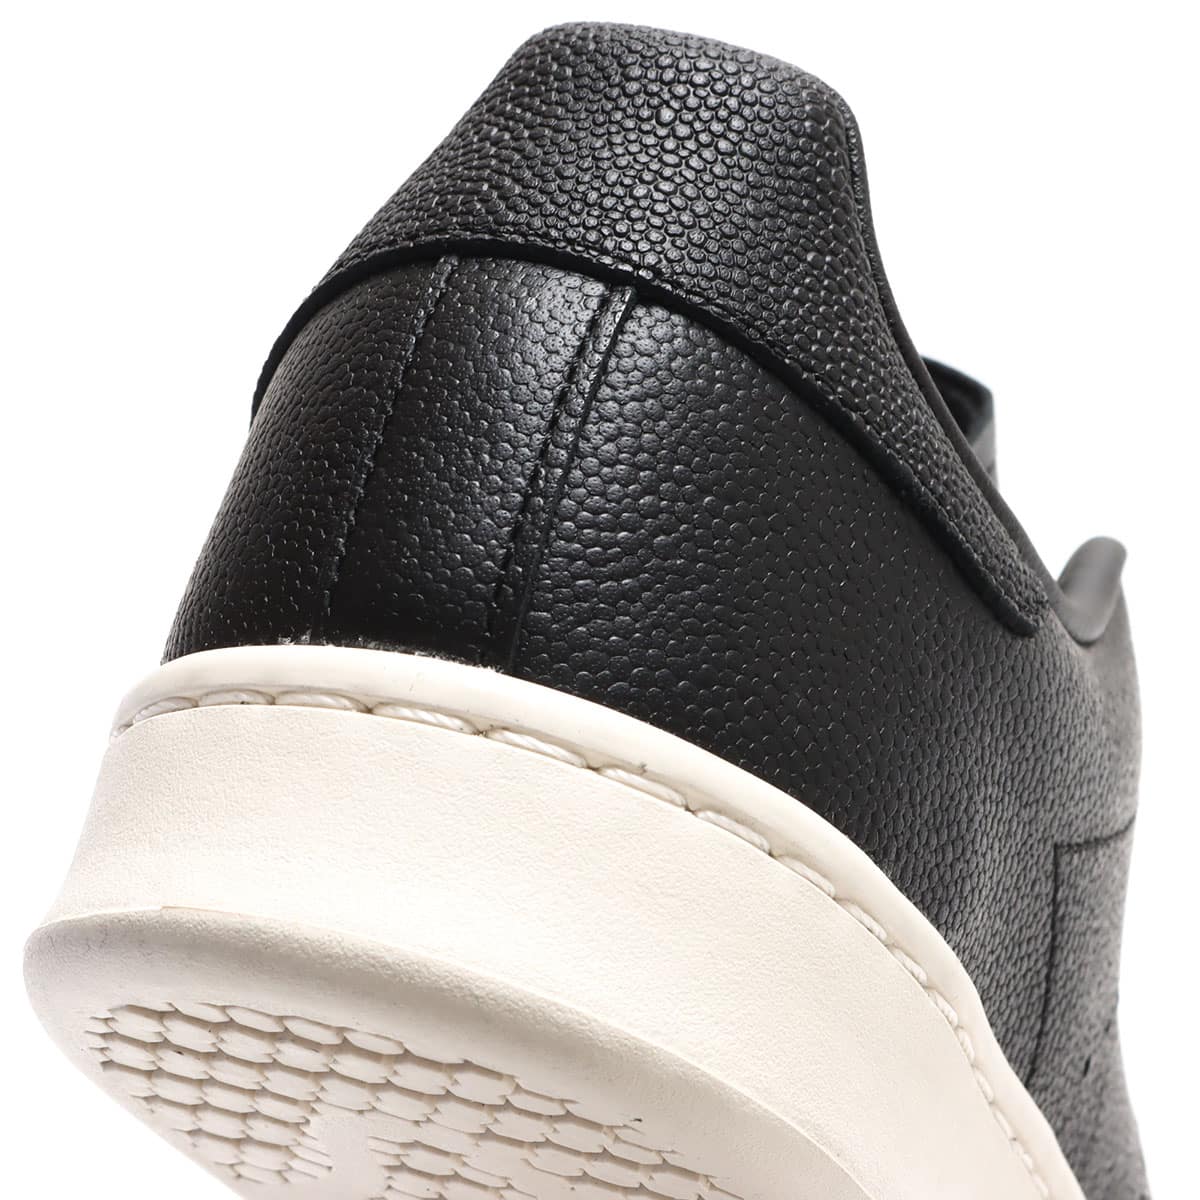 adidas STAN SMITH H CORE BLACK/CORE BLACK/CHALK WHITE 22SS-I